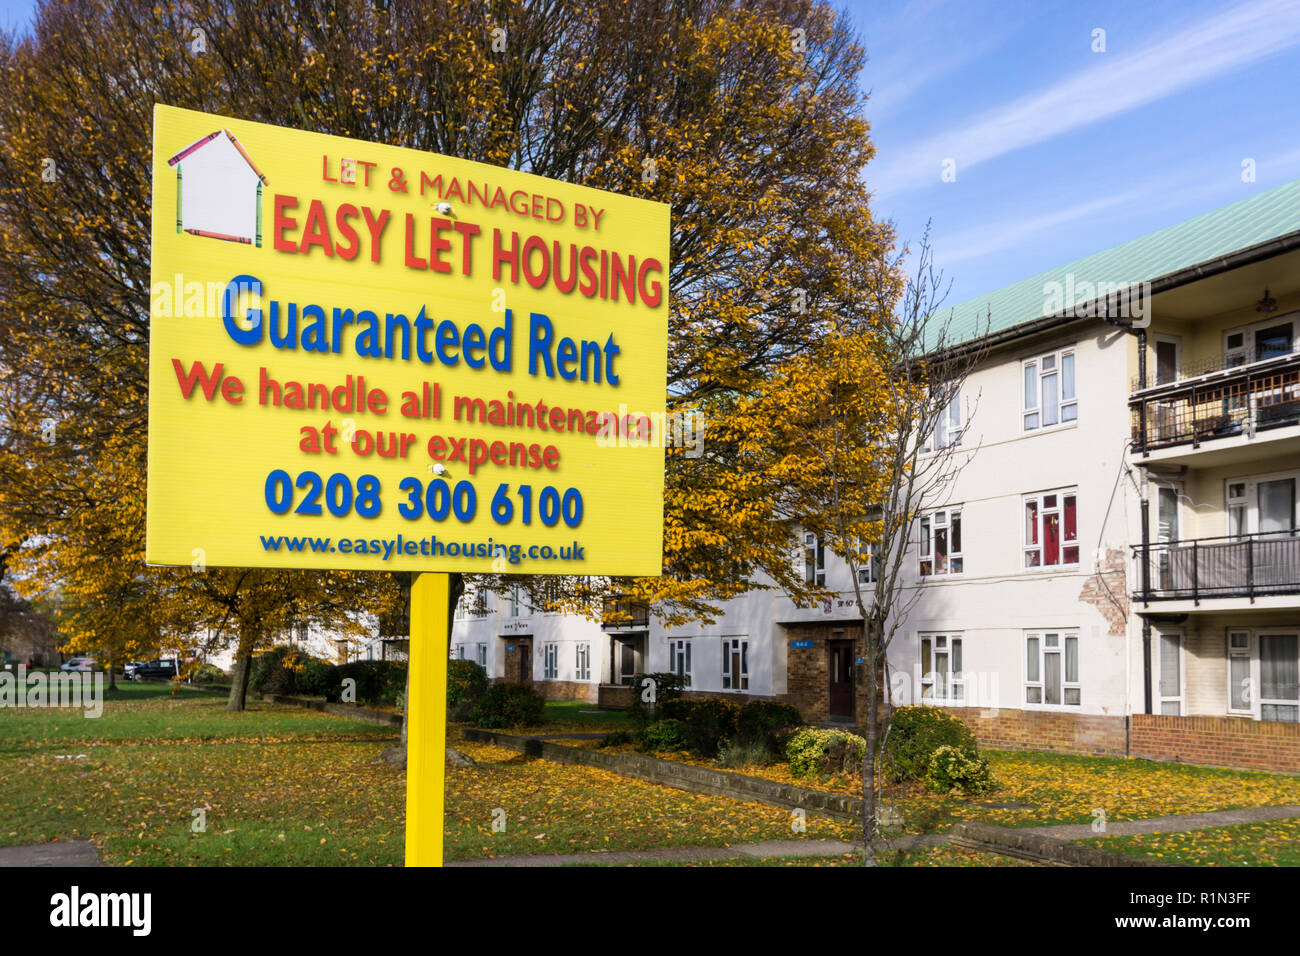 Inscrivez-vous pour laisser facile Immobilier propriété à bail et la gestion immobilière agents à Bromley, dans le sud de Londres. Banque D'Images